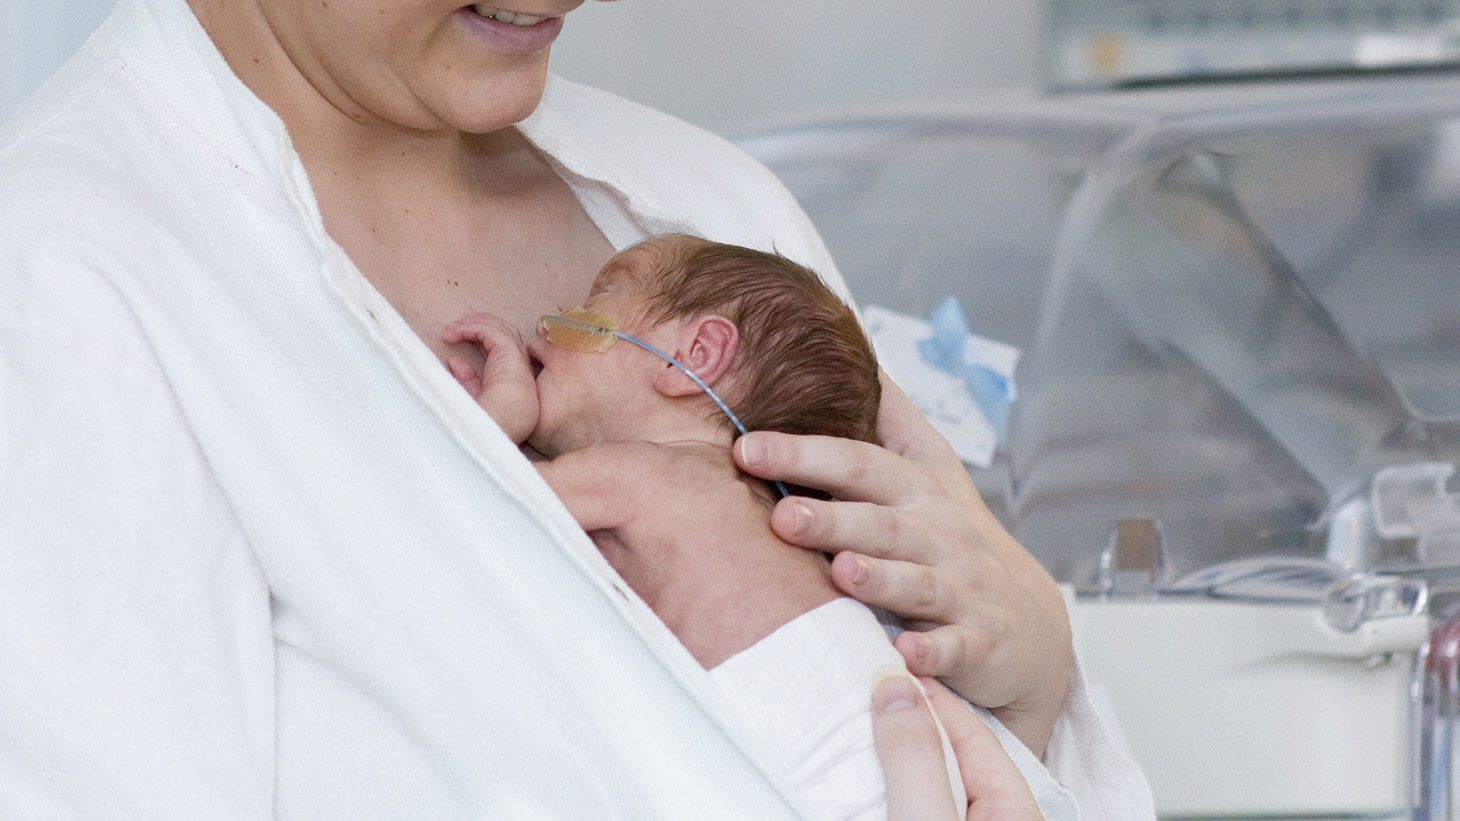 Kvinde med lille nyfødt hud mod hud - kuvøse i baggrunden